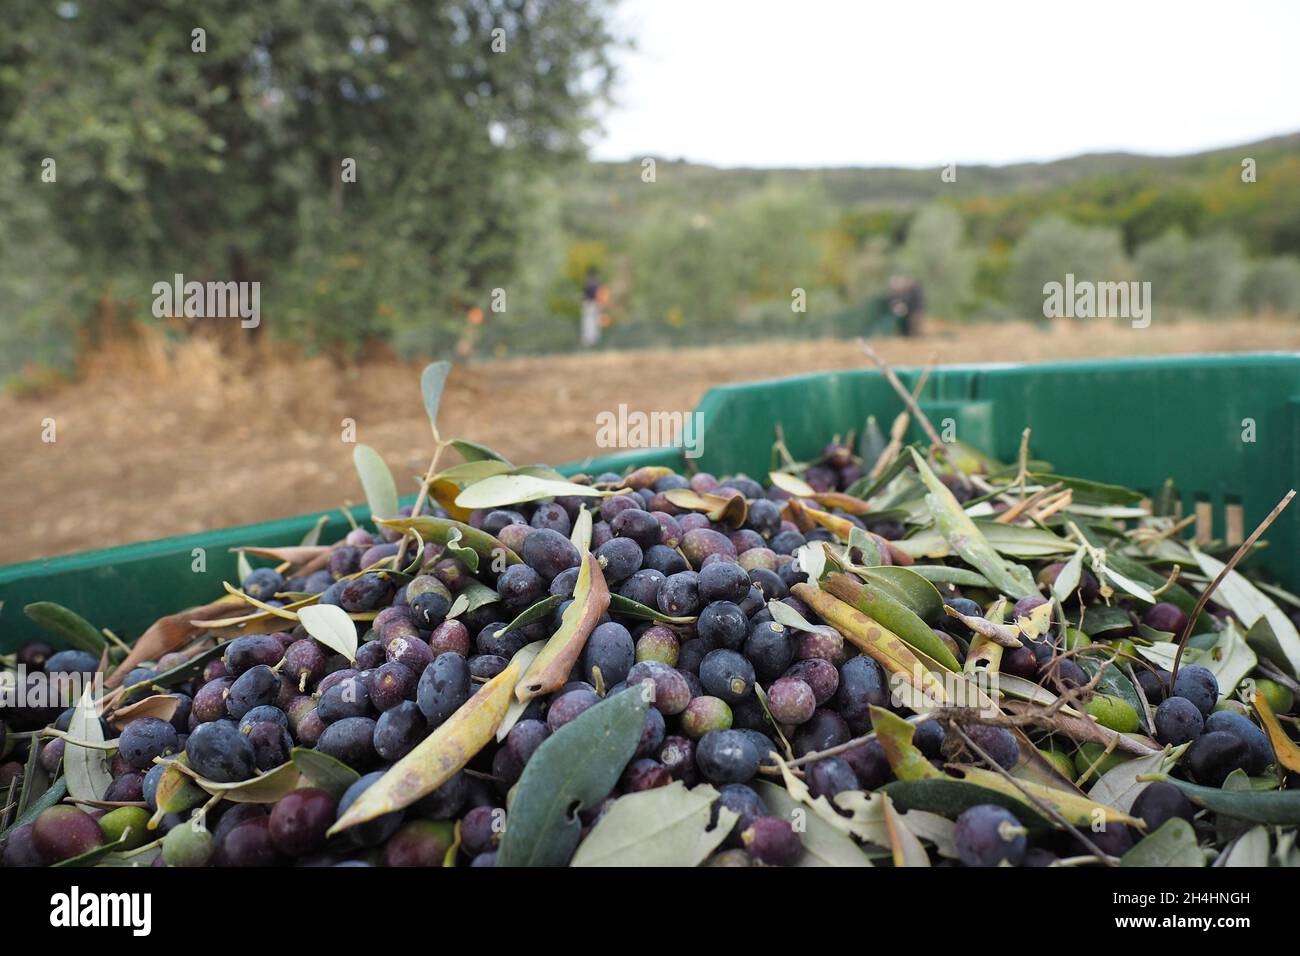 Italie, Toscane, Civitella dans Val di Chiana (Arezzo), 25 octobre 2021 : récolte d'olives, la récolte a été pénalisée par des facteurs météorologiques défavorables. Banque D'Images